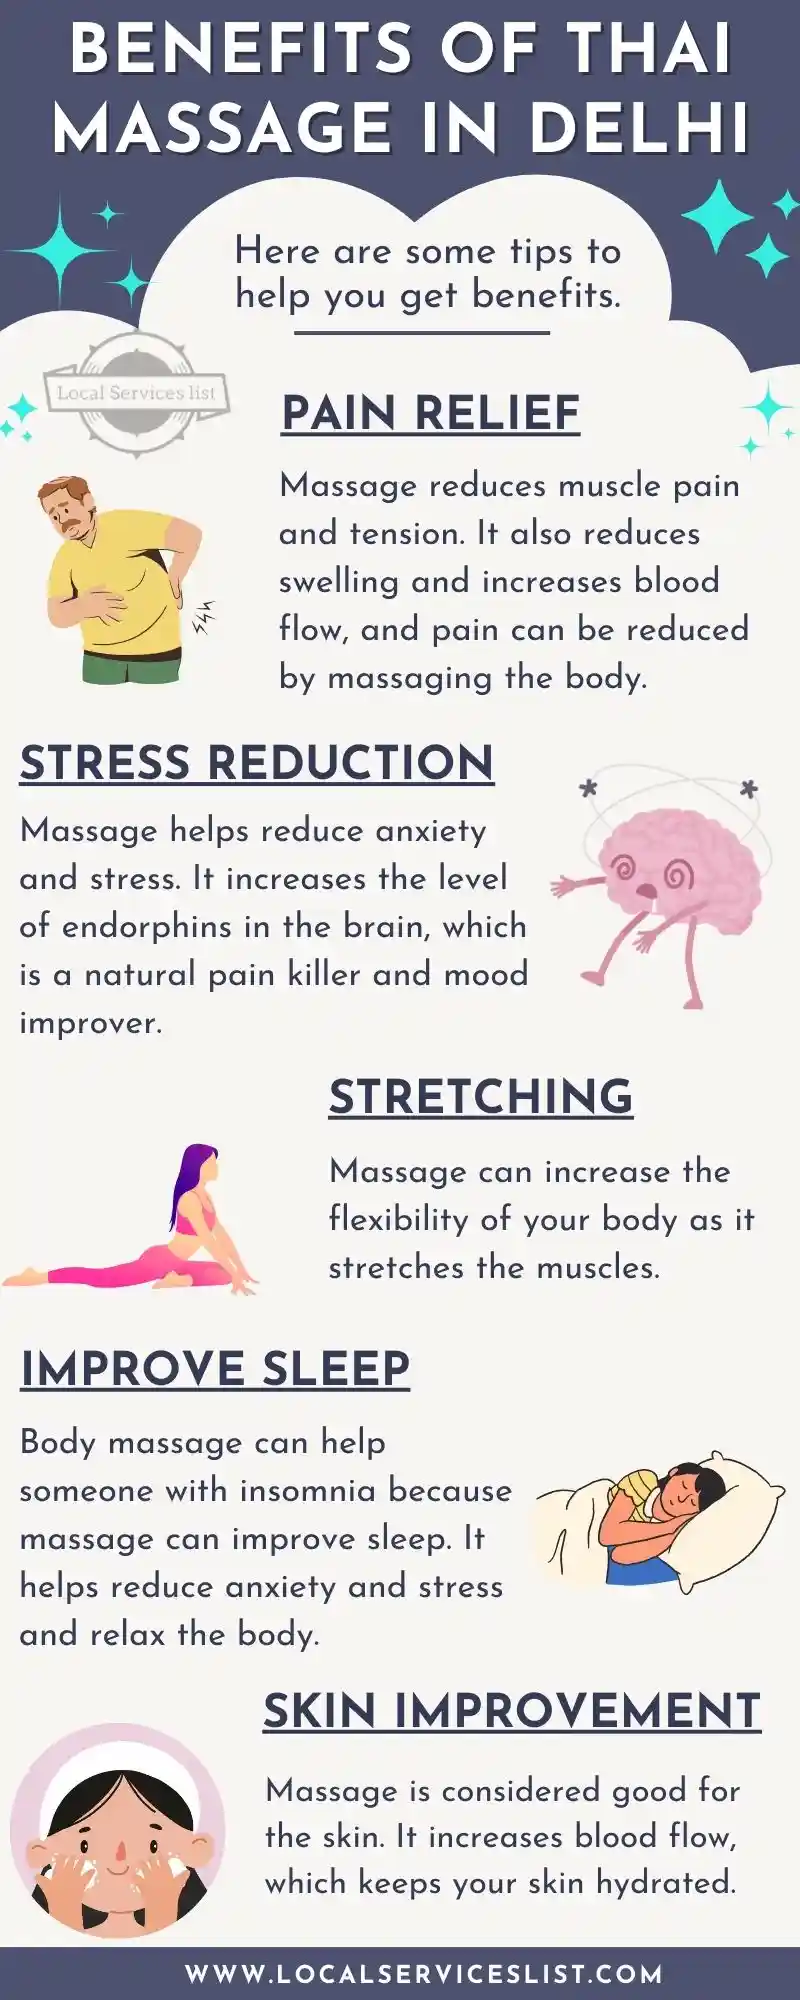 Top 5 Benefits of Thai Massage in Delhi